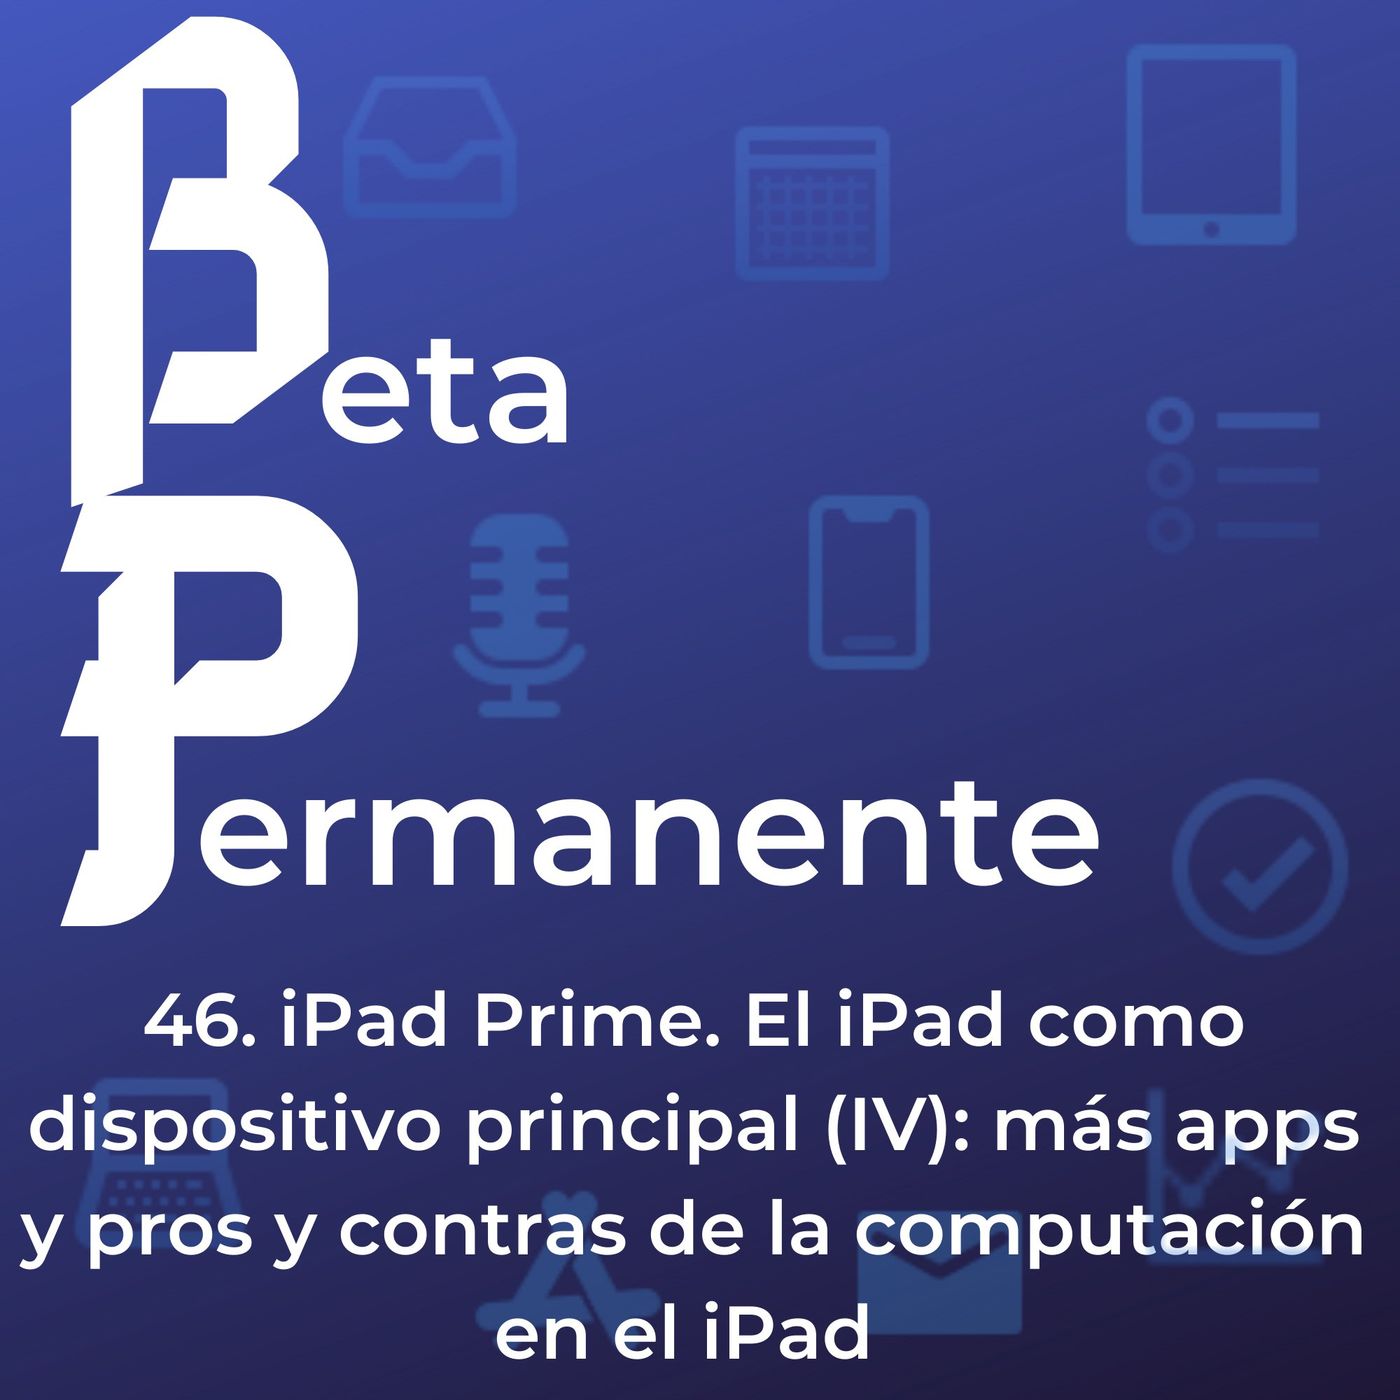 BP46 - iPad Prime. El iPad como dispositivo principal (IV). Mas apps y pros y contras de la coputacion en el iPad